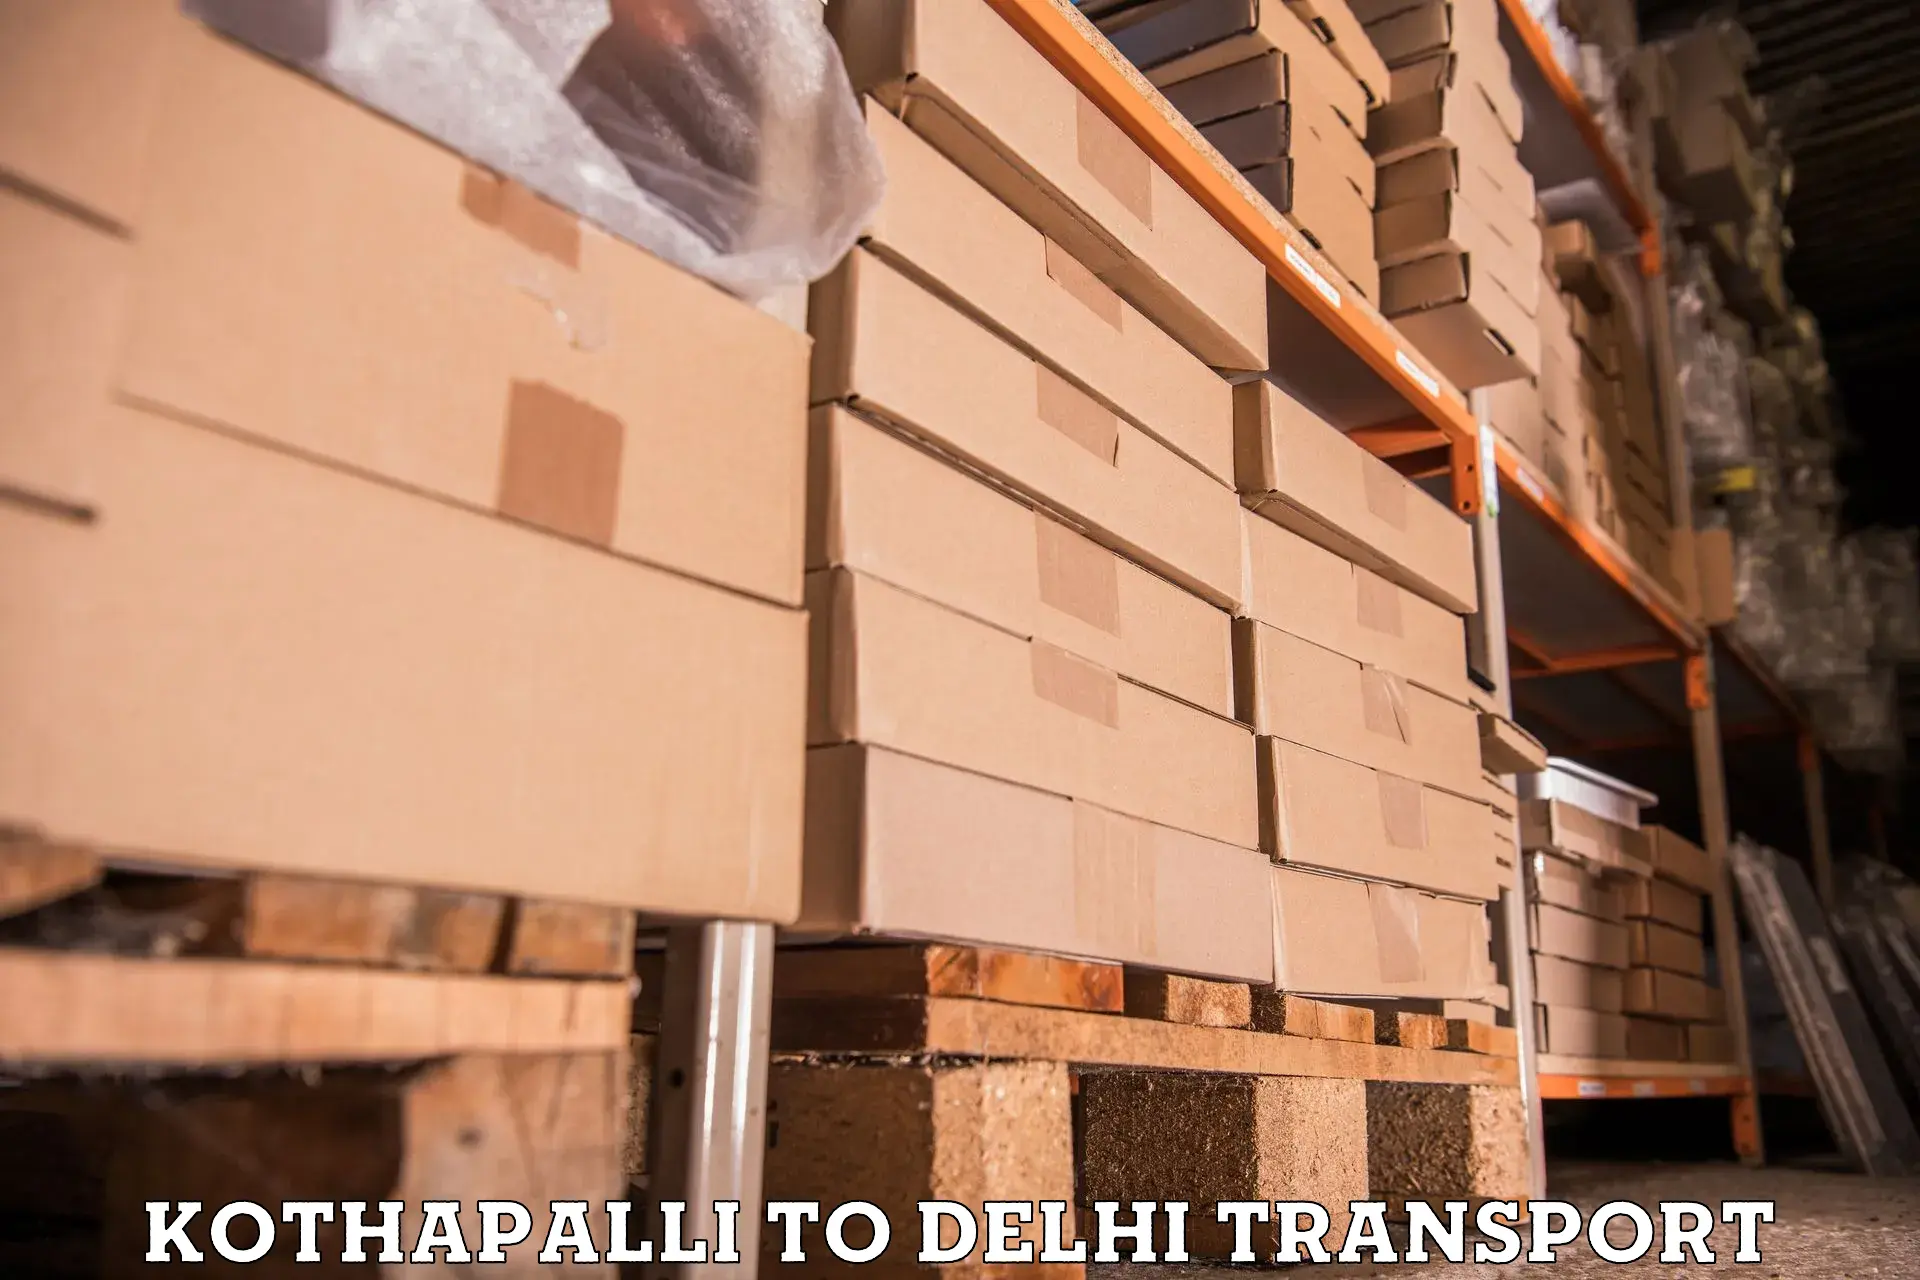 Interstate transport services Kothapalli to Delhi Technological University DTU